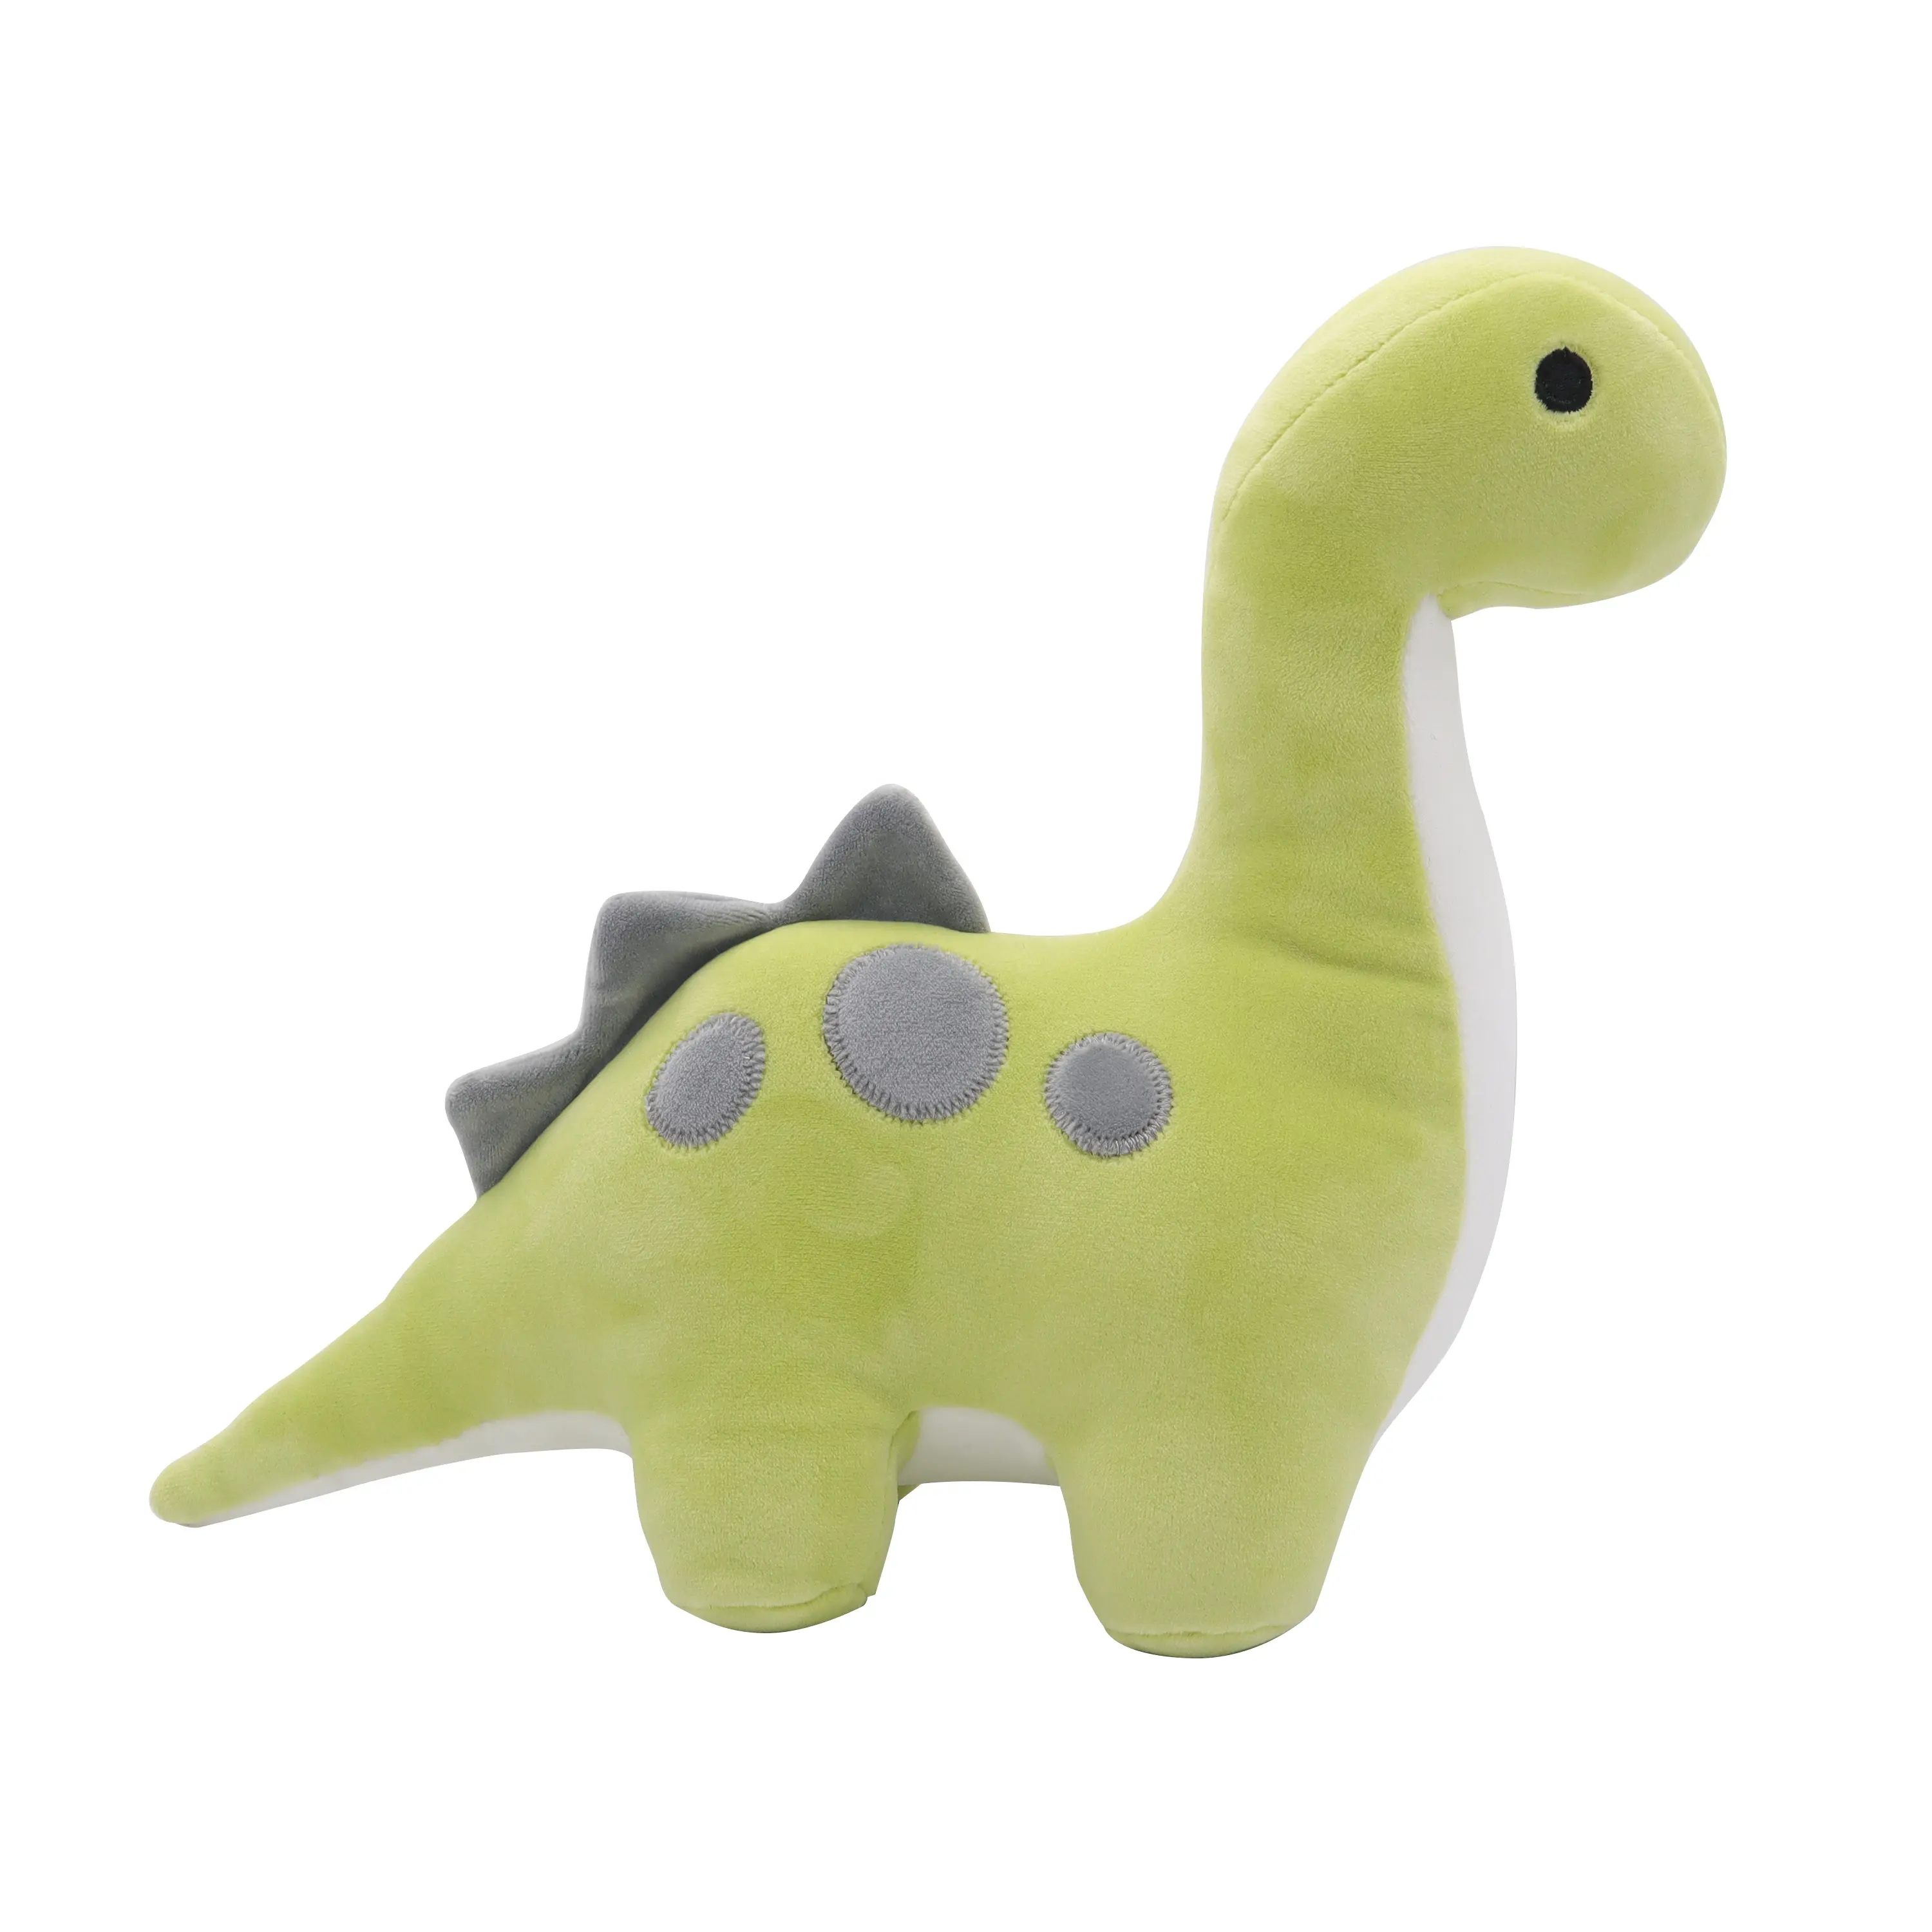 Tanystropheus-dinosaurio de peluche, juguete de dinosaurio de peluche hecho a medida, tela súper suave elástica en muchos tamaños